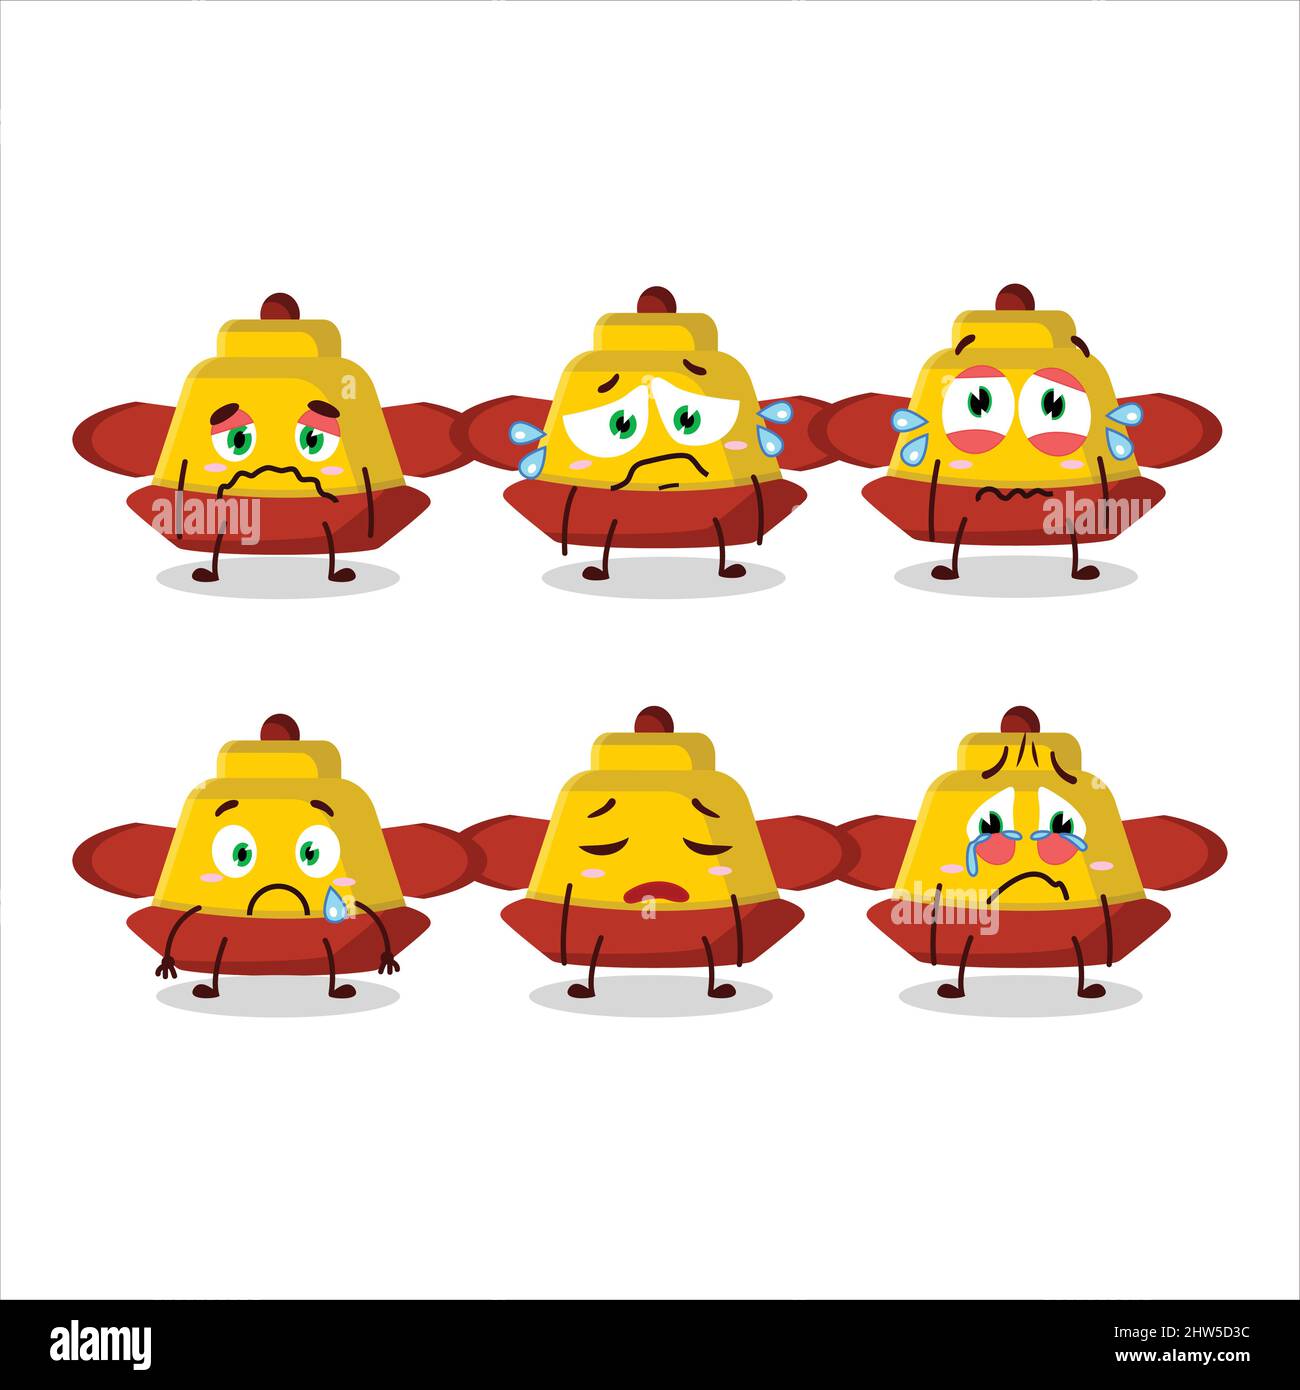 Personnage de dessin animé chapeau chinois jaune avec expression triste.  Illustration vectorielle Image Vectorielle Stock - Alamy